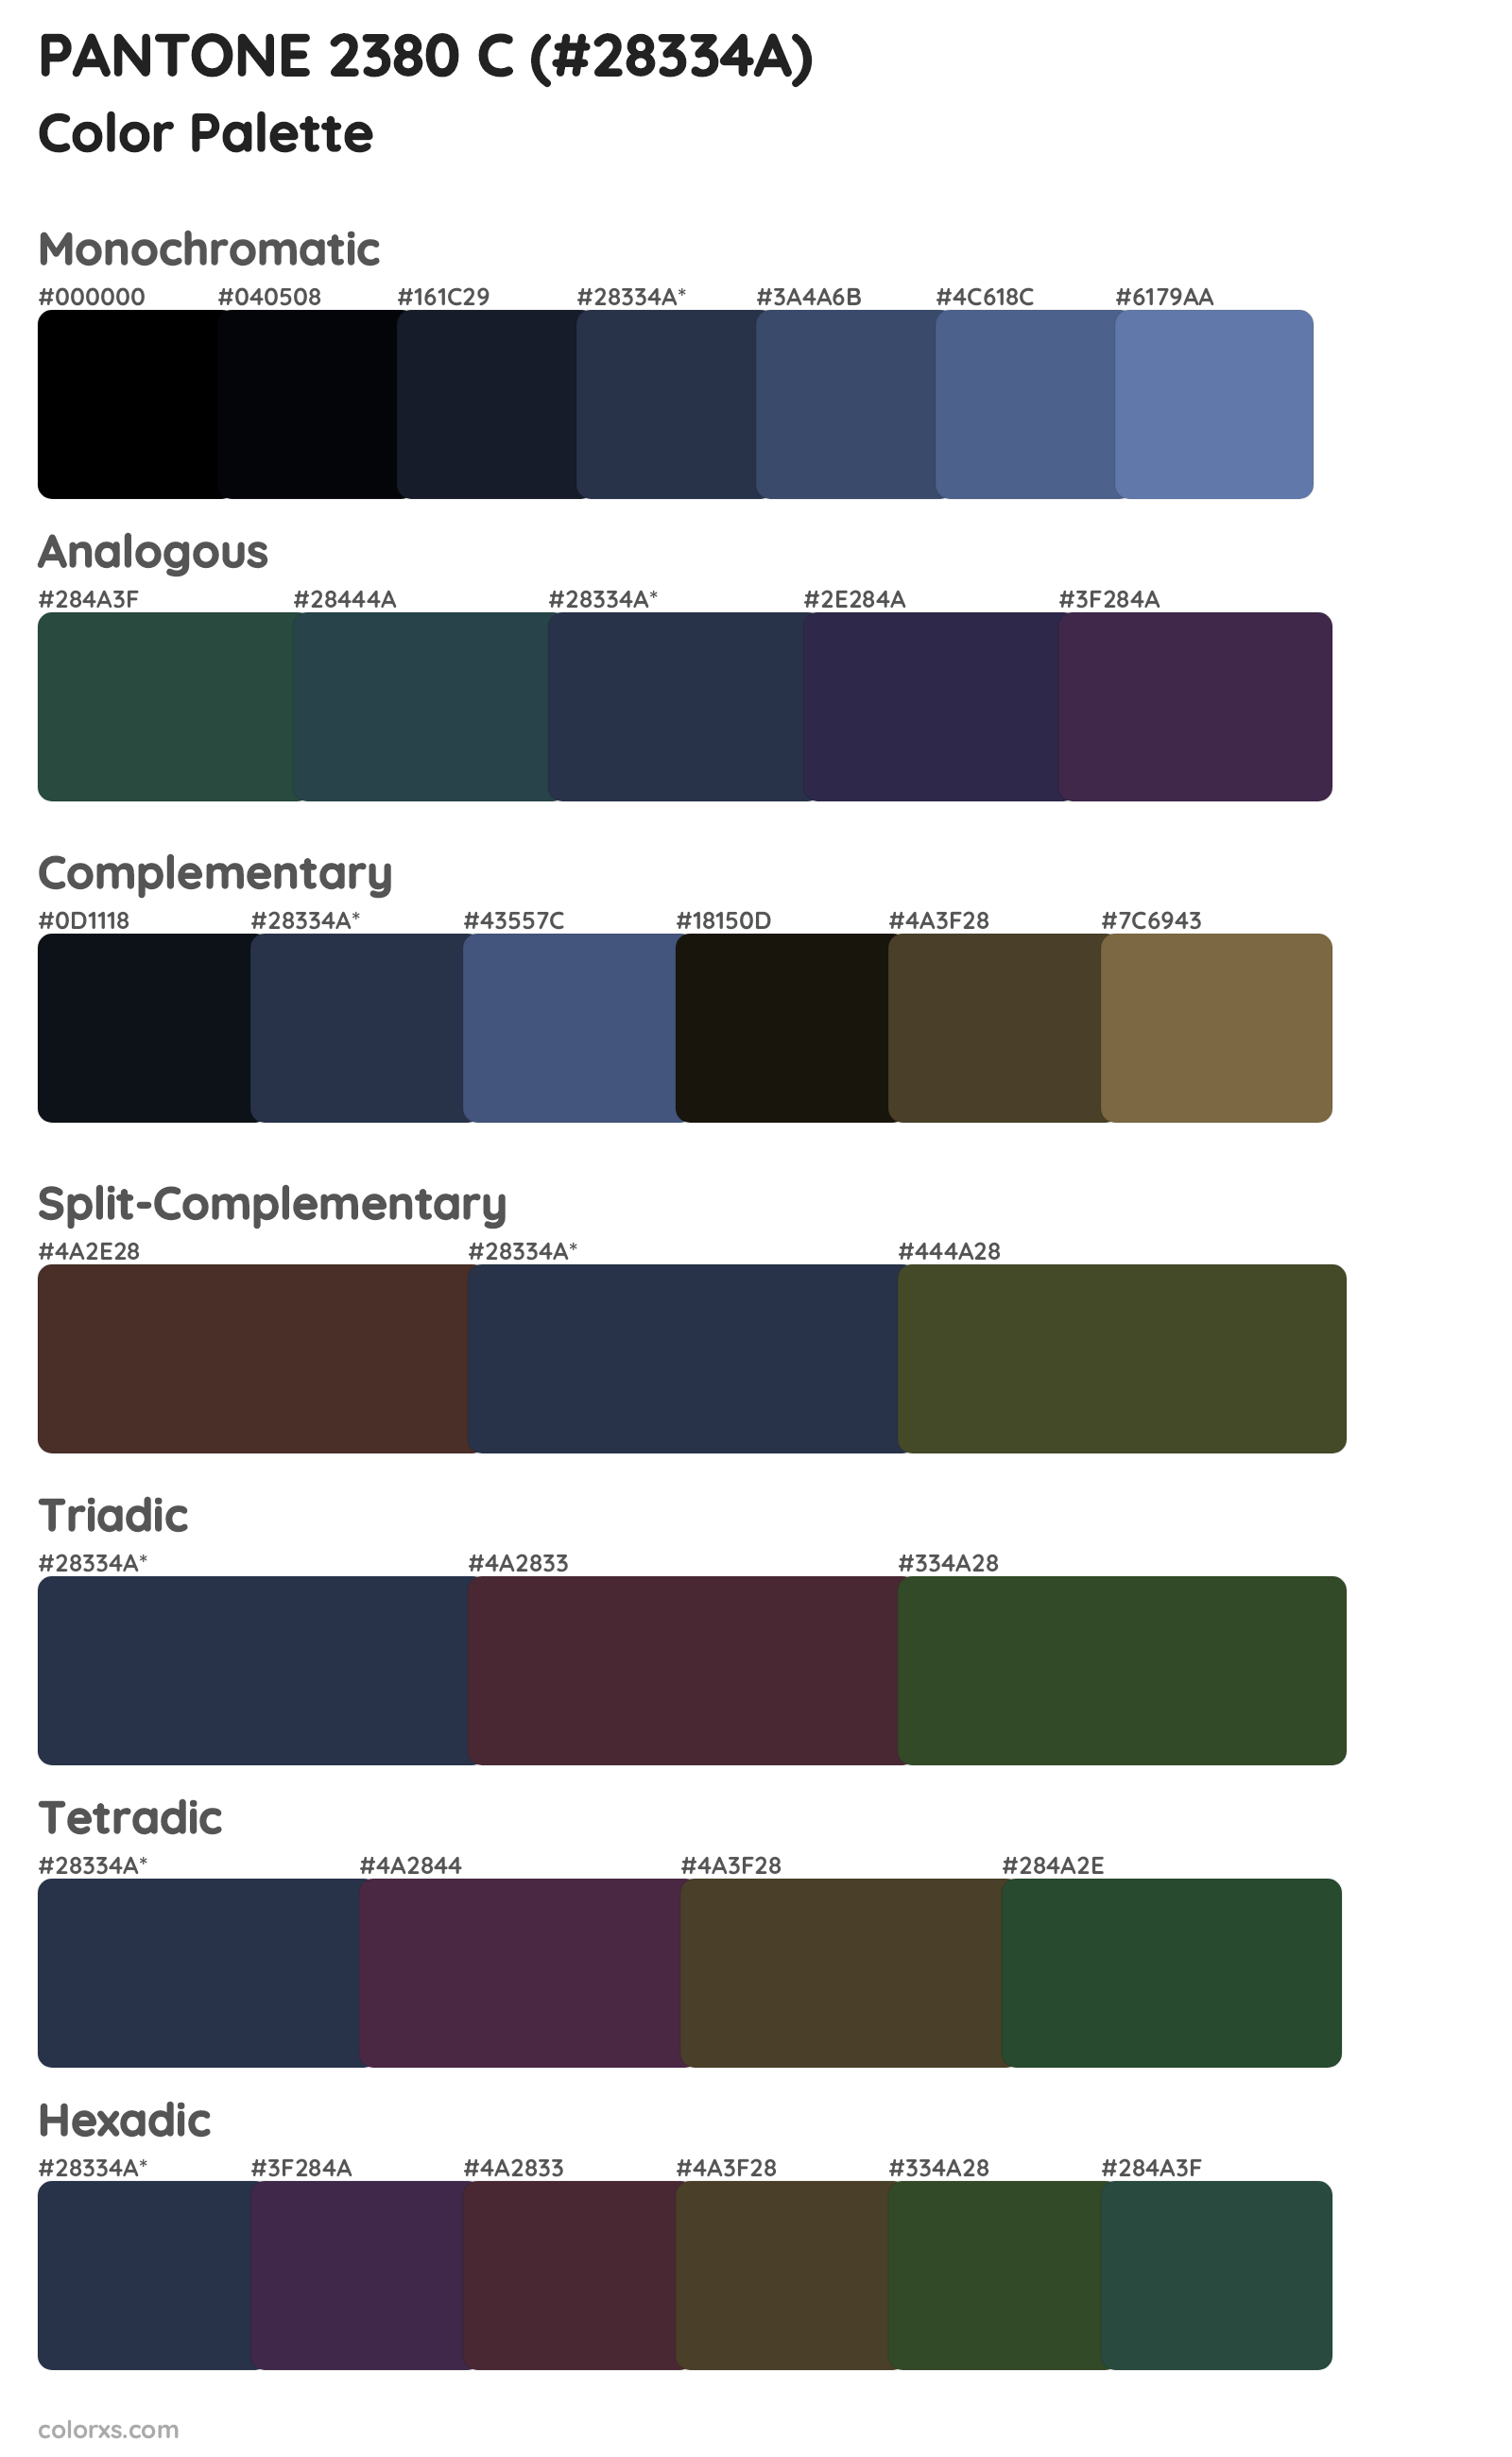 PANTONE 2380 C Color Scheme Palettes